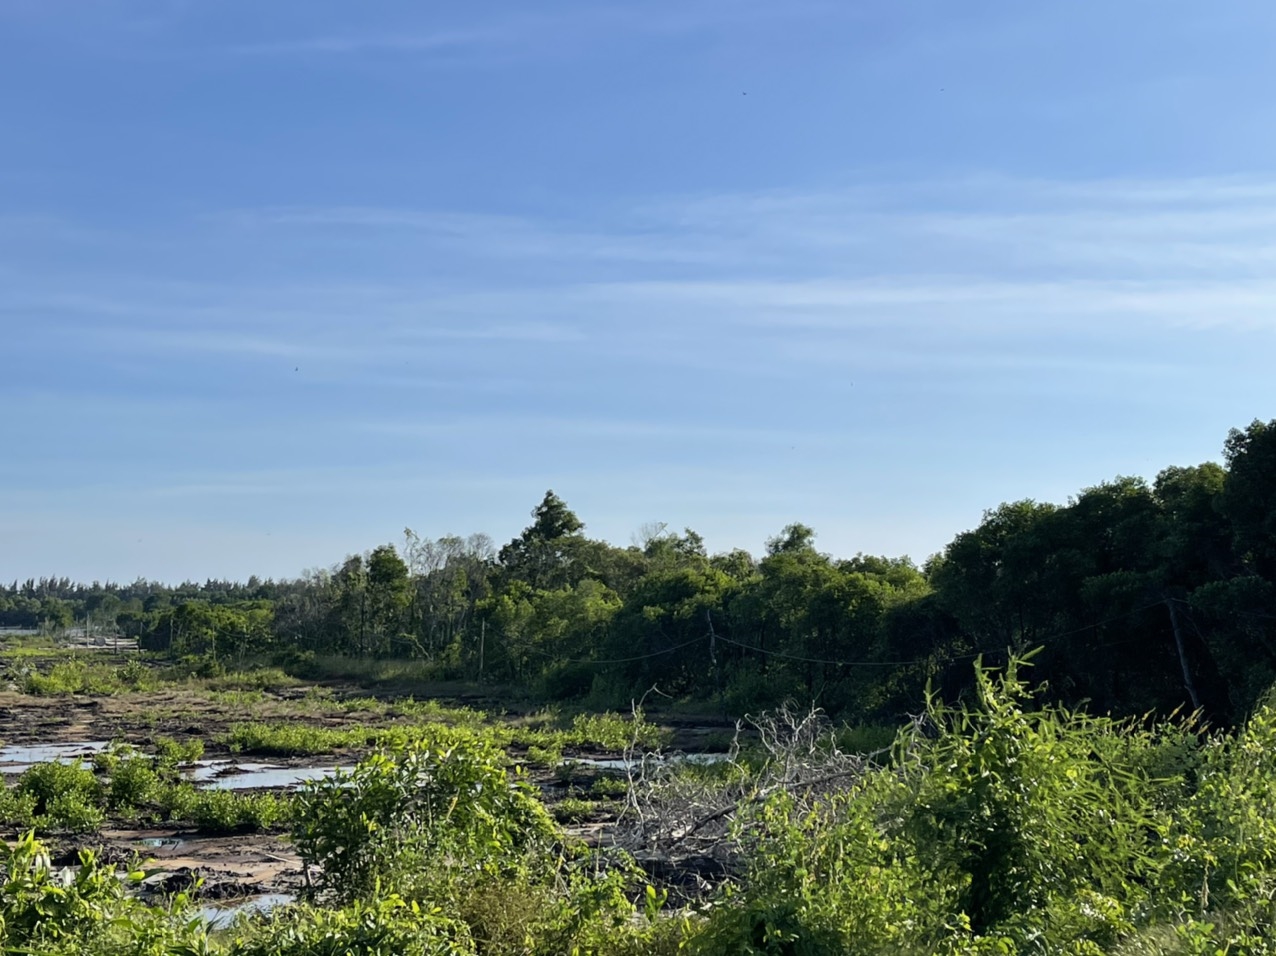 Dự án “Billand Villa HPC” thực tế vẫn là khu sình lầy, chồng lấn đất rừng. (Ảnh do phóng viên chụp thực địa cùng UBND huyện Đất Đỏ vào giữa tháng 11/2021)